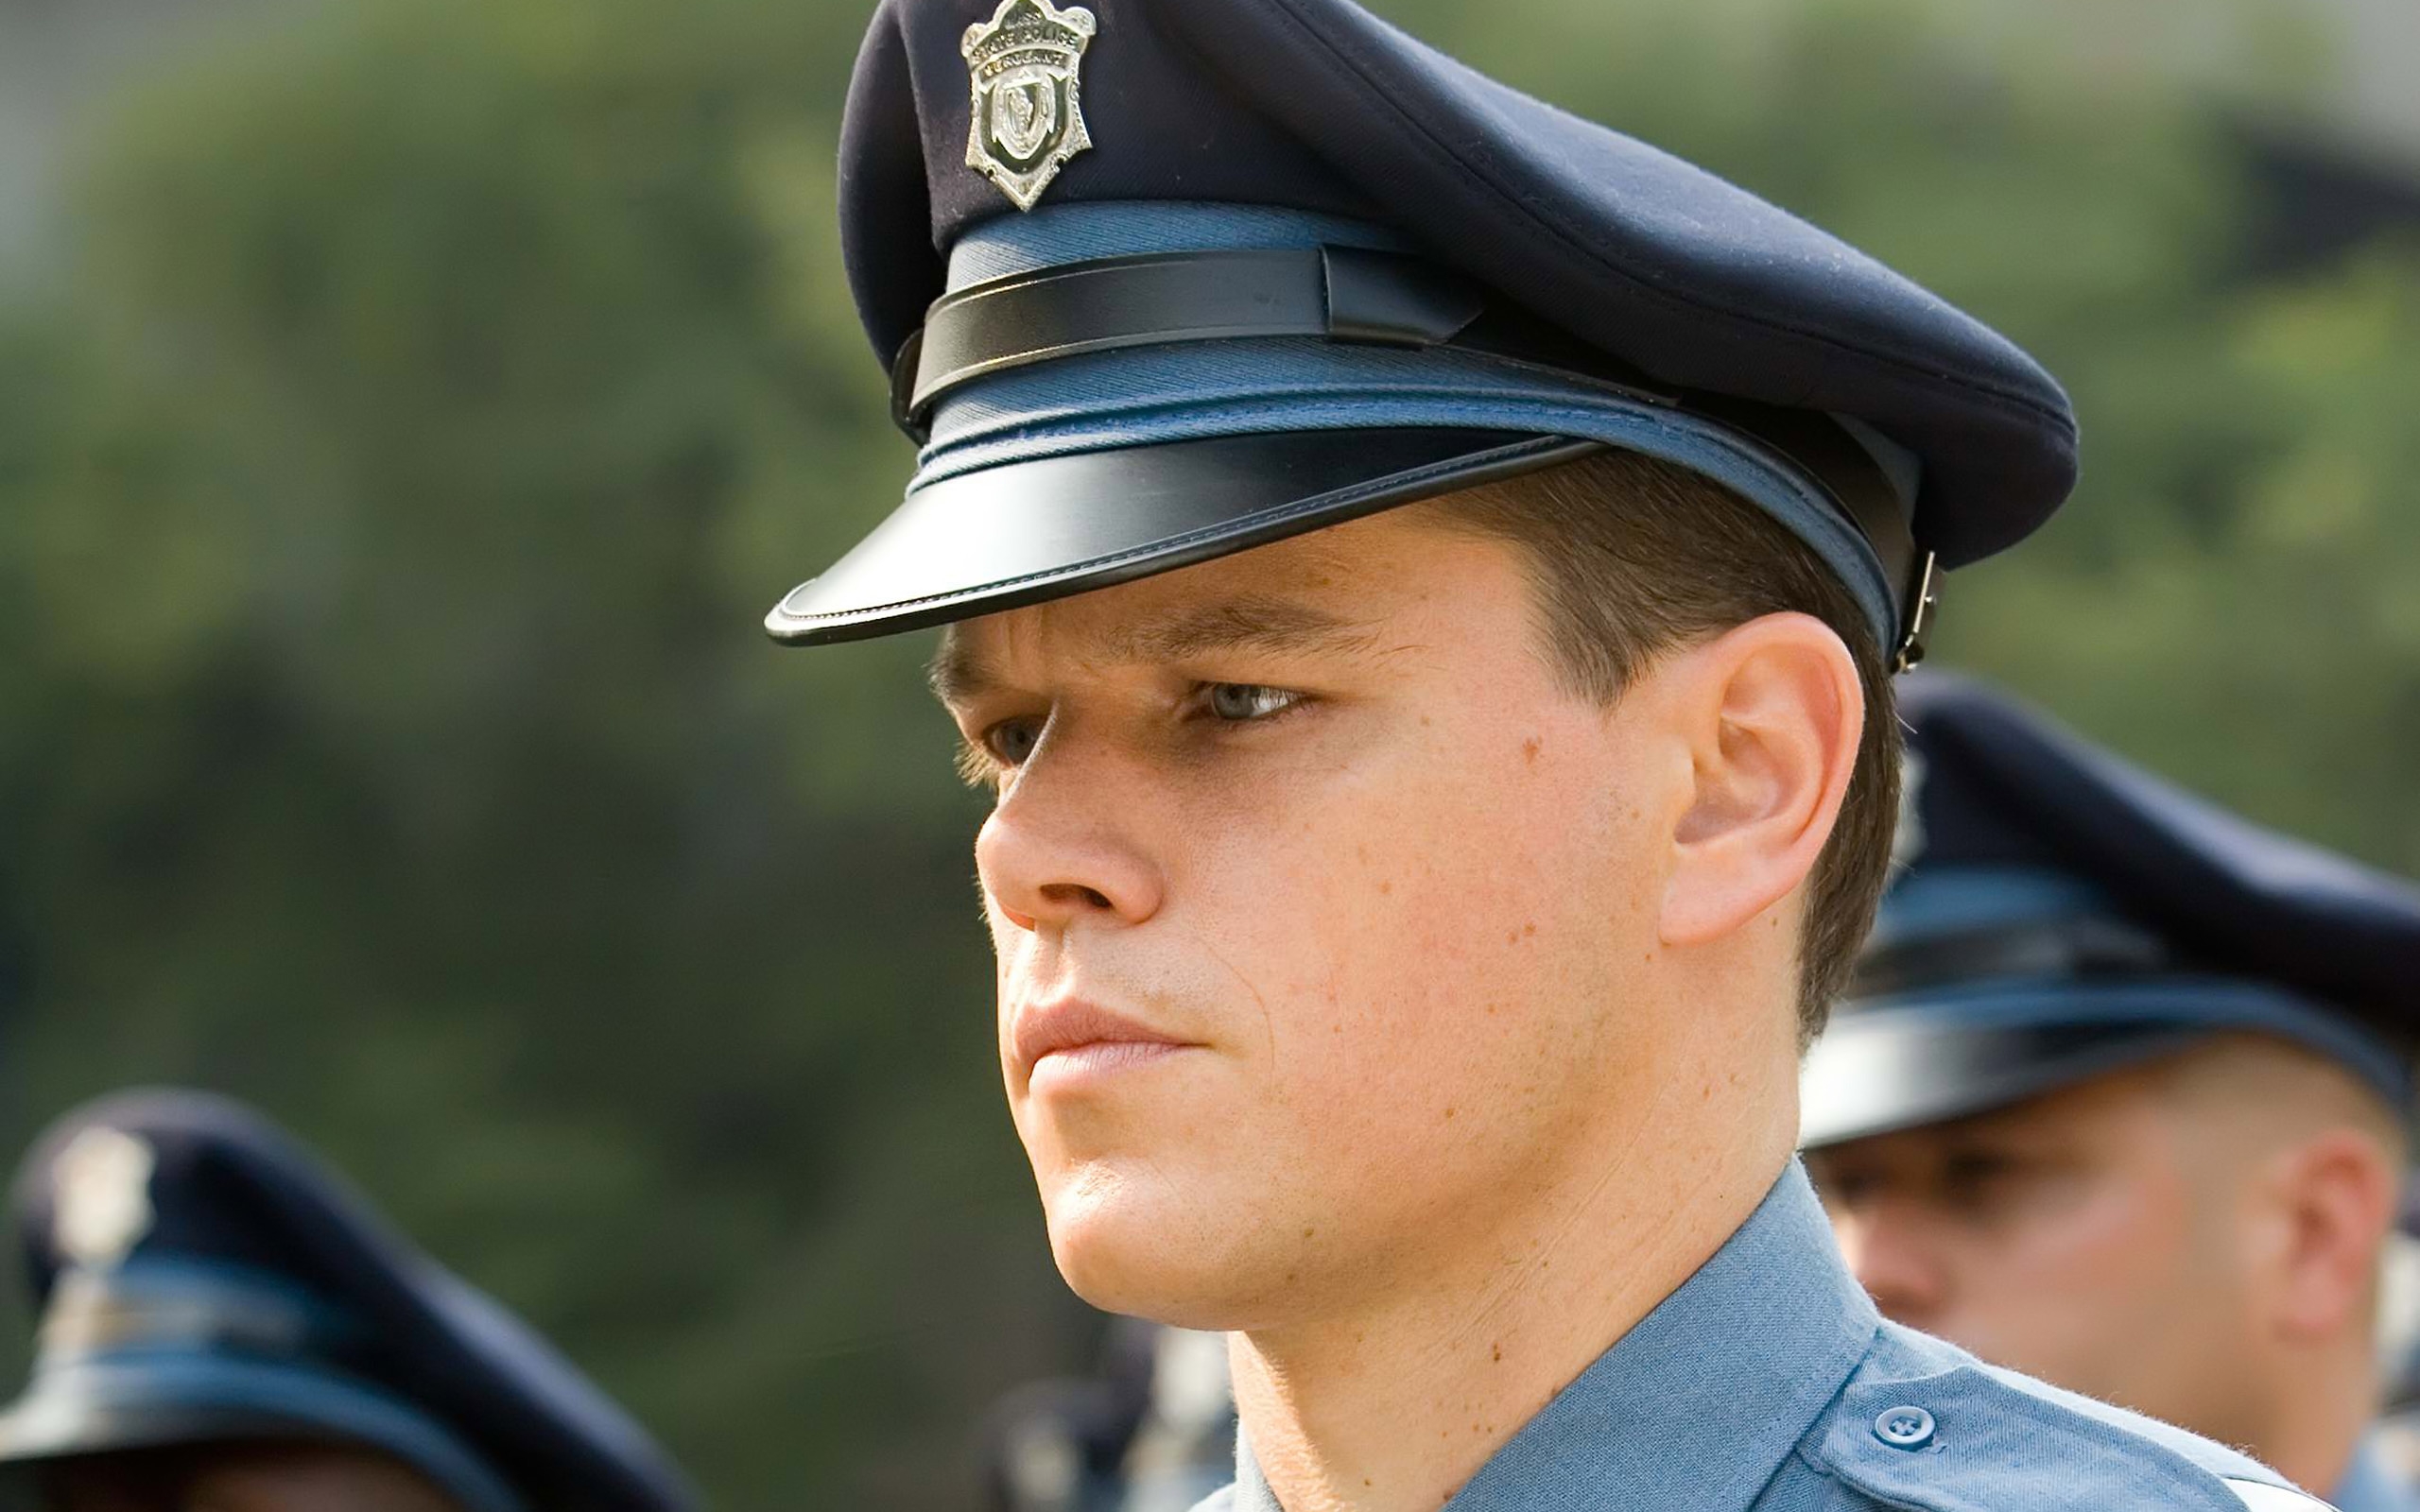 Matt Damon Cop for 2560 x 1600 widescreen resolution